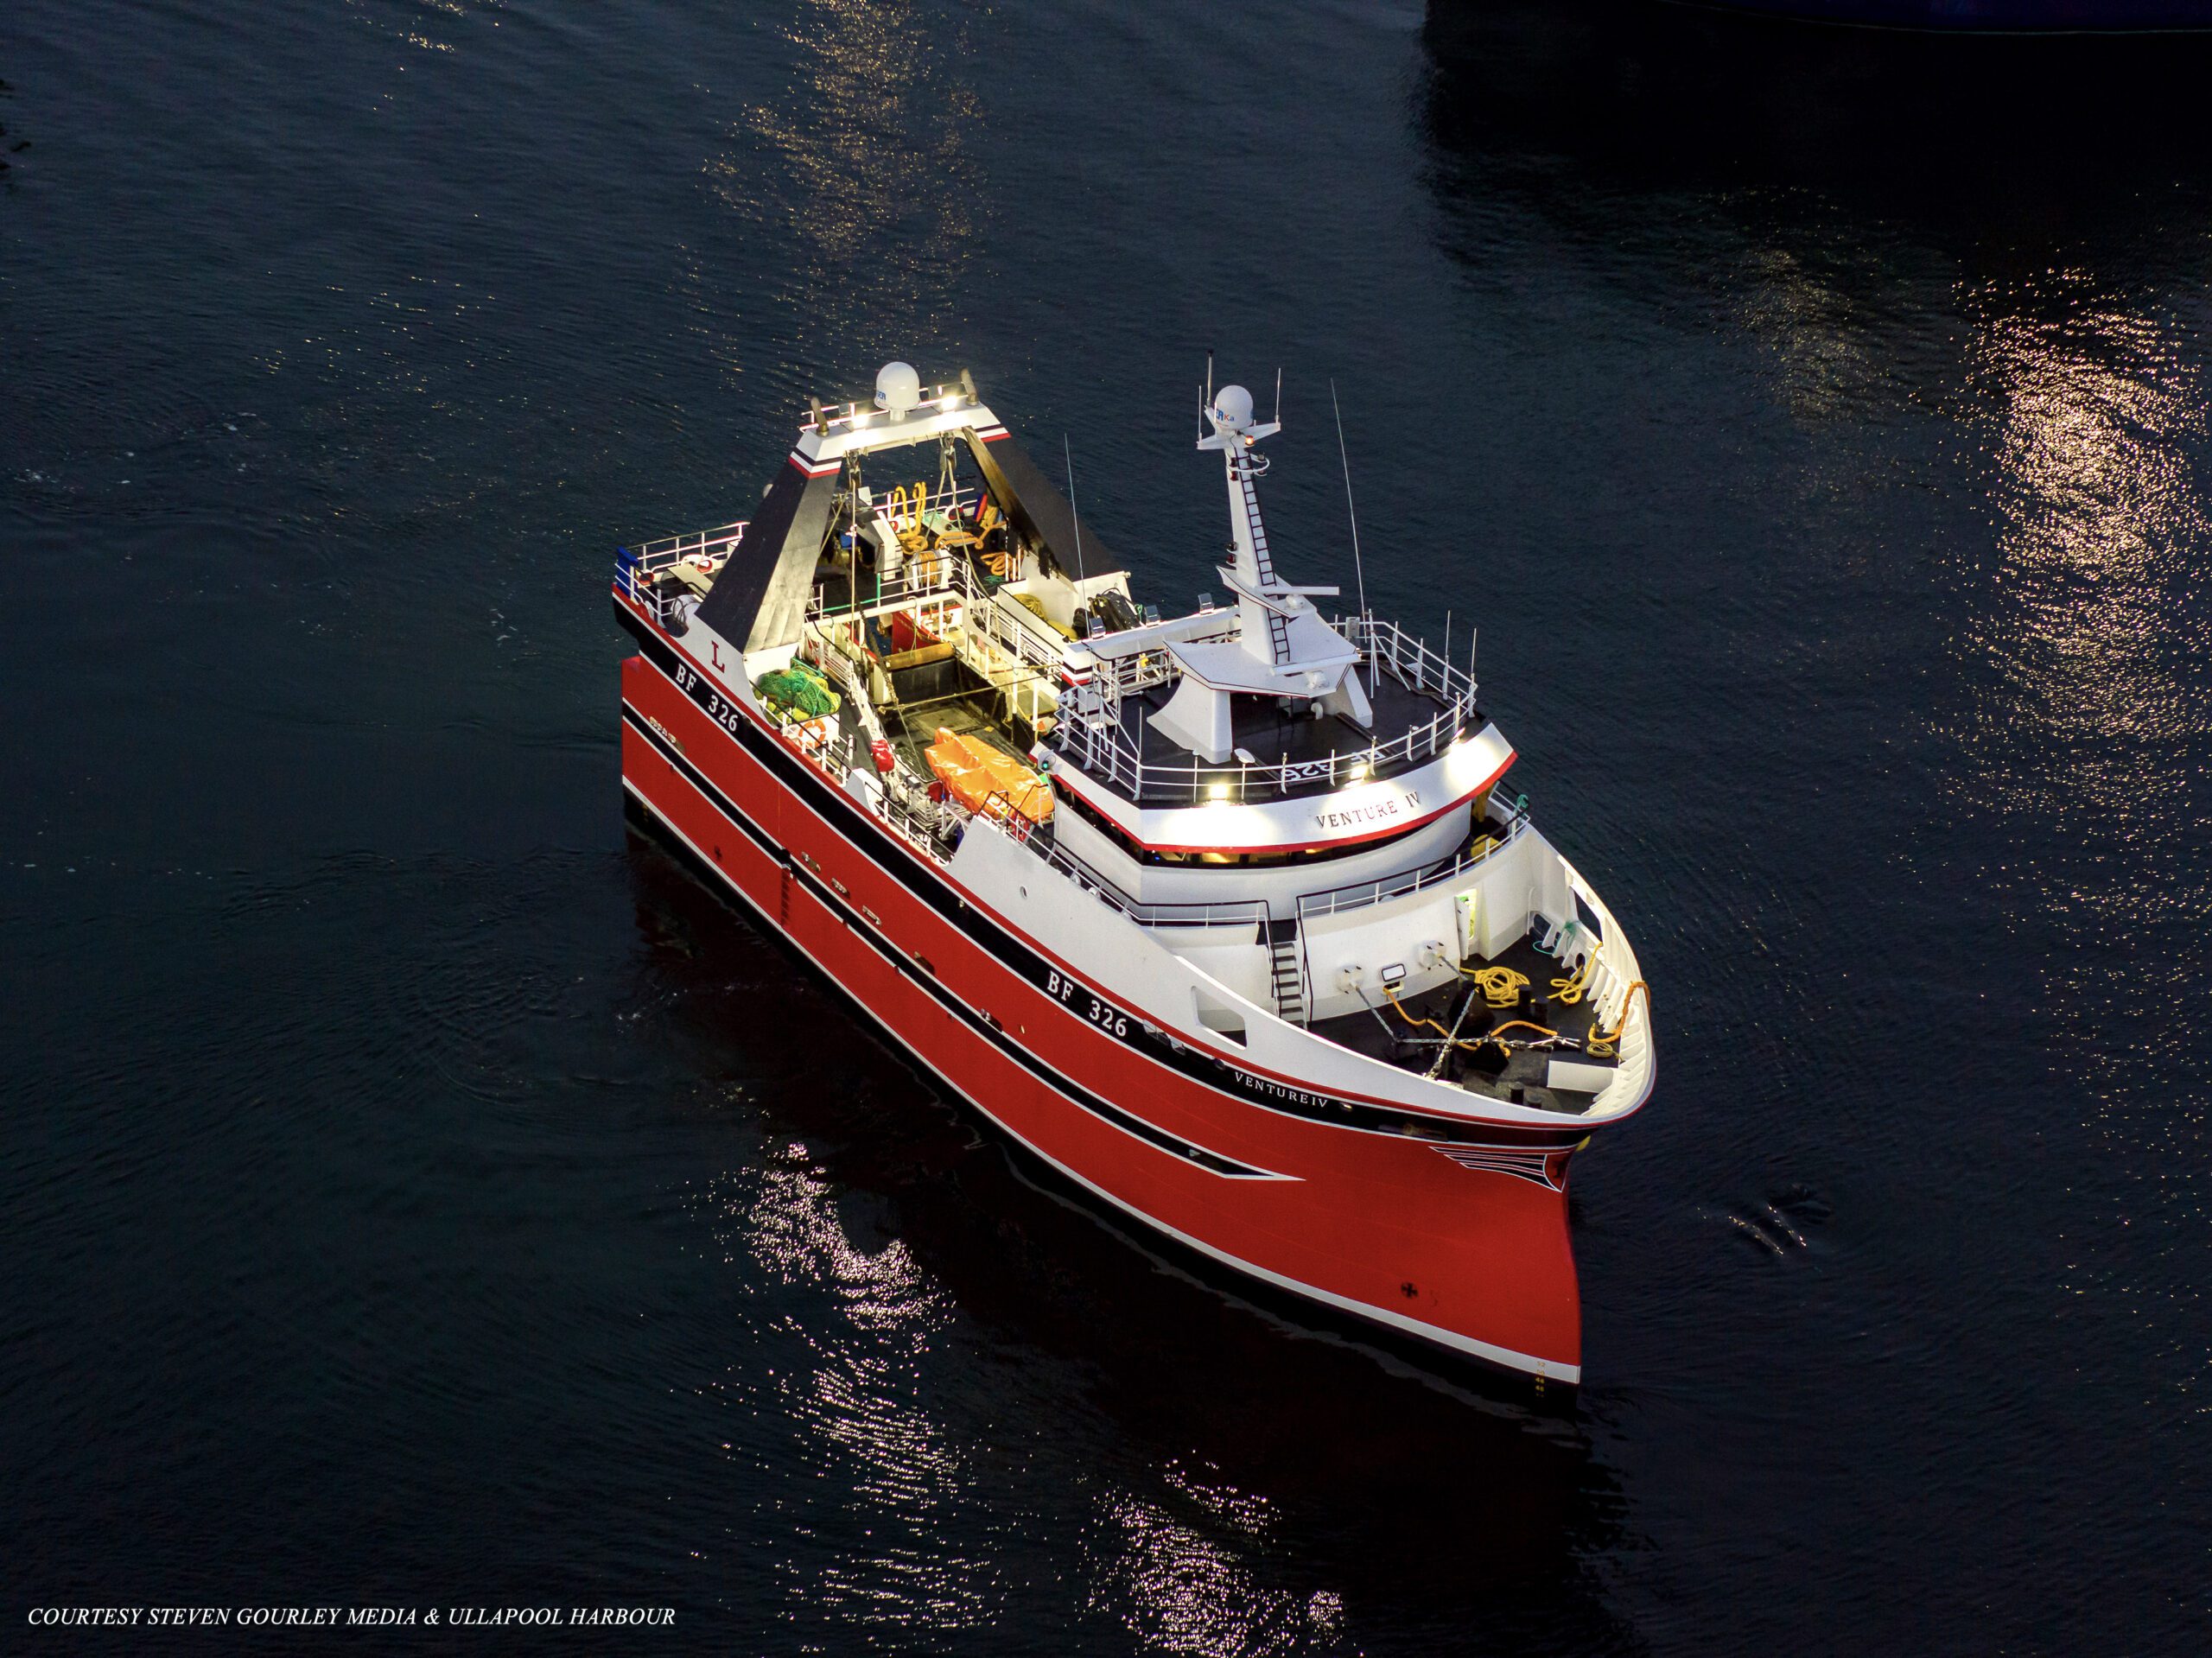 Macduff Ship Design - Venture IV - Press Release